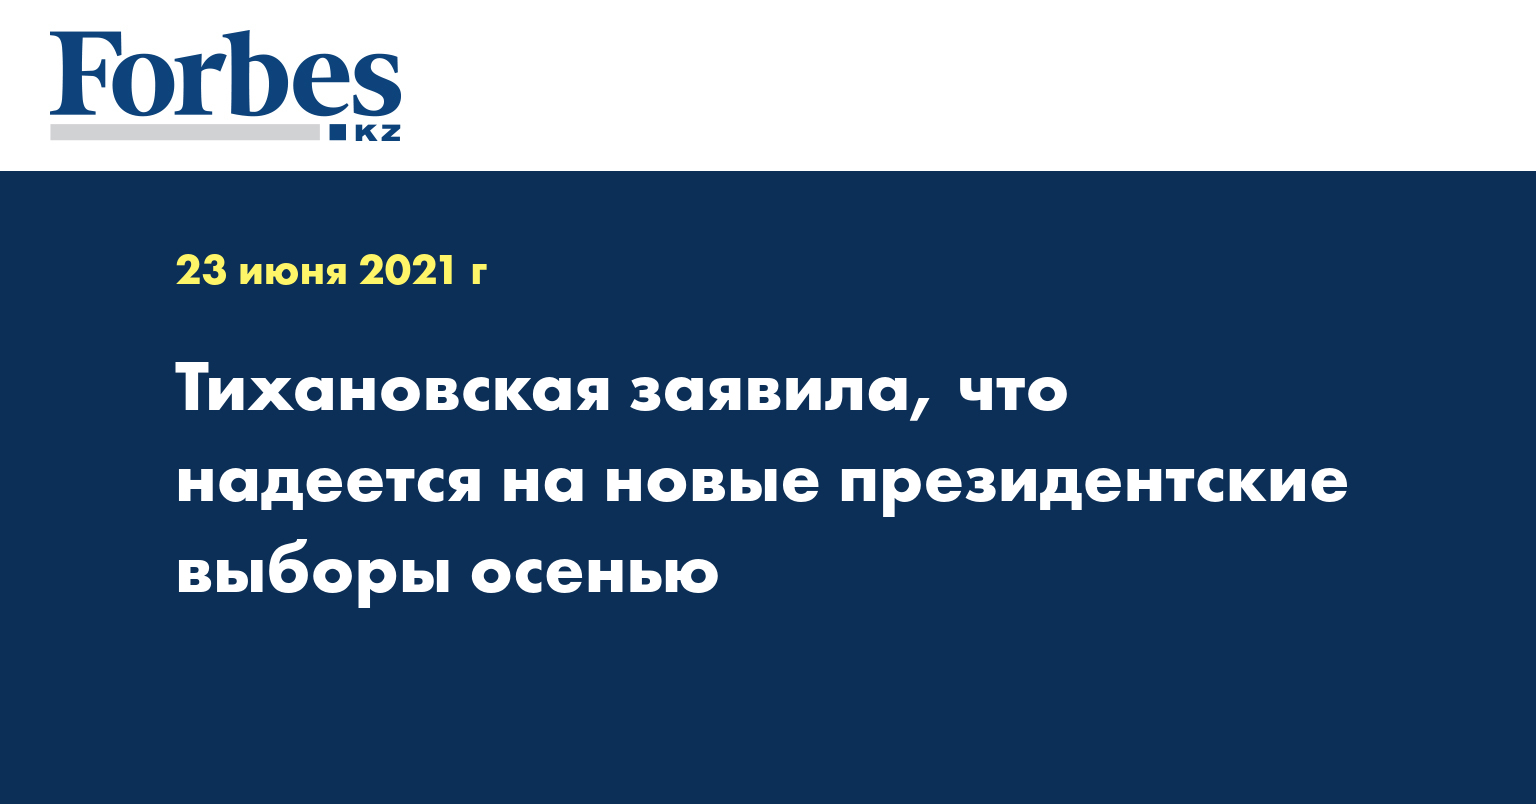 Тихановская заявила, что надеется на новые президентские выборы осенью